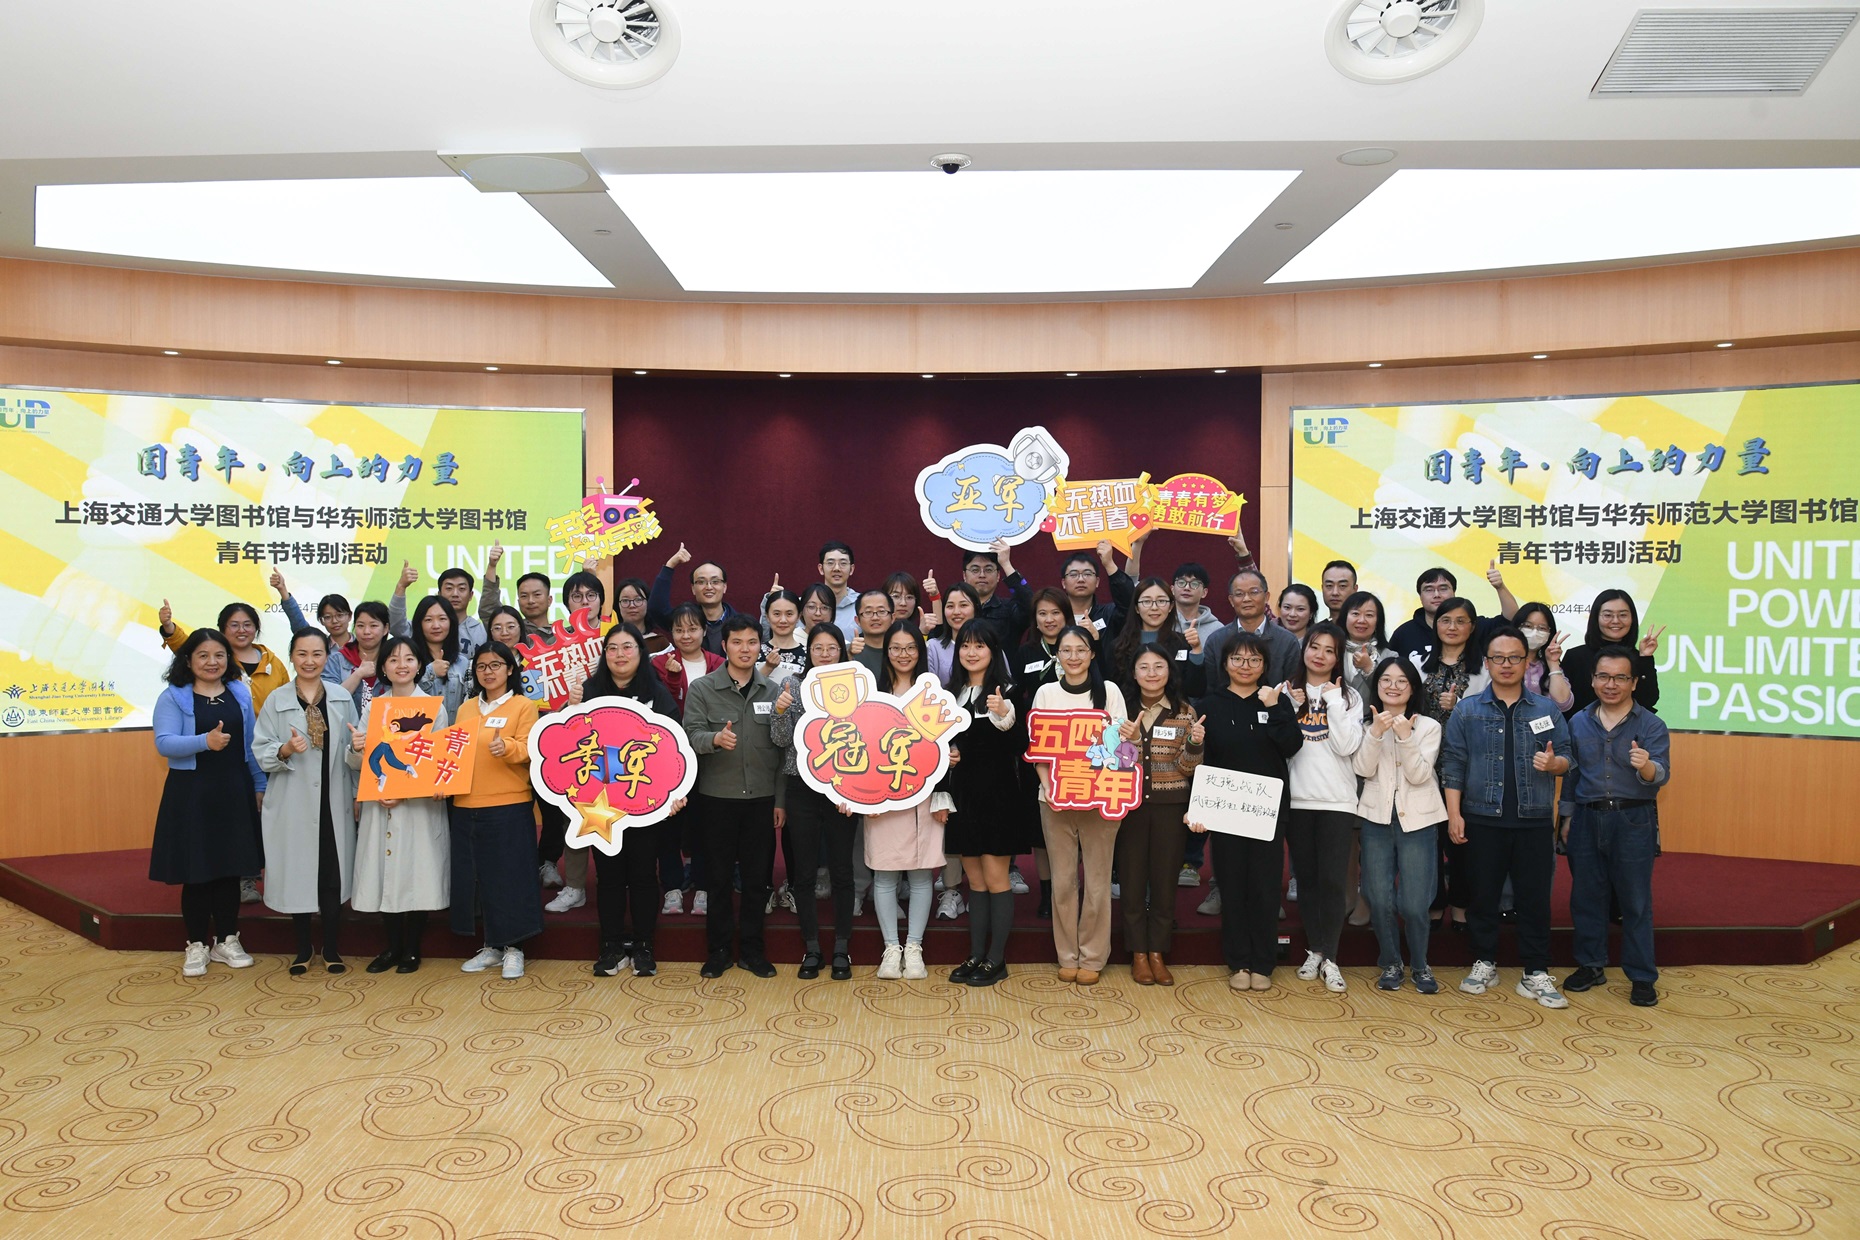 上海交通大学图书馆、华东师范大学图书馆联合举办青年节特别活动